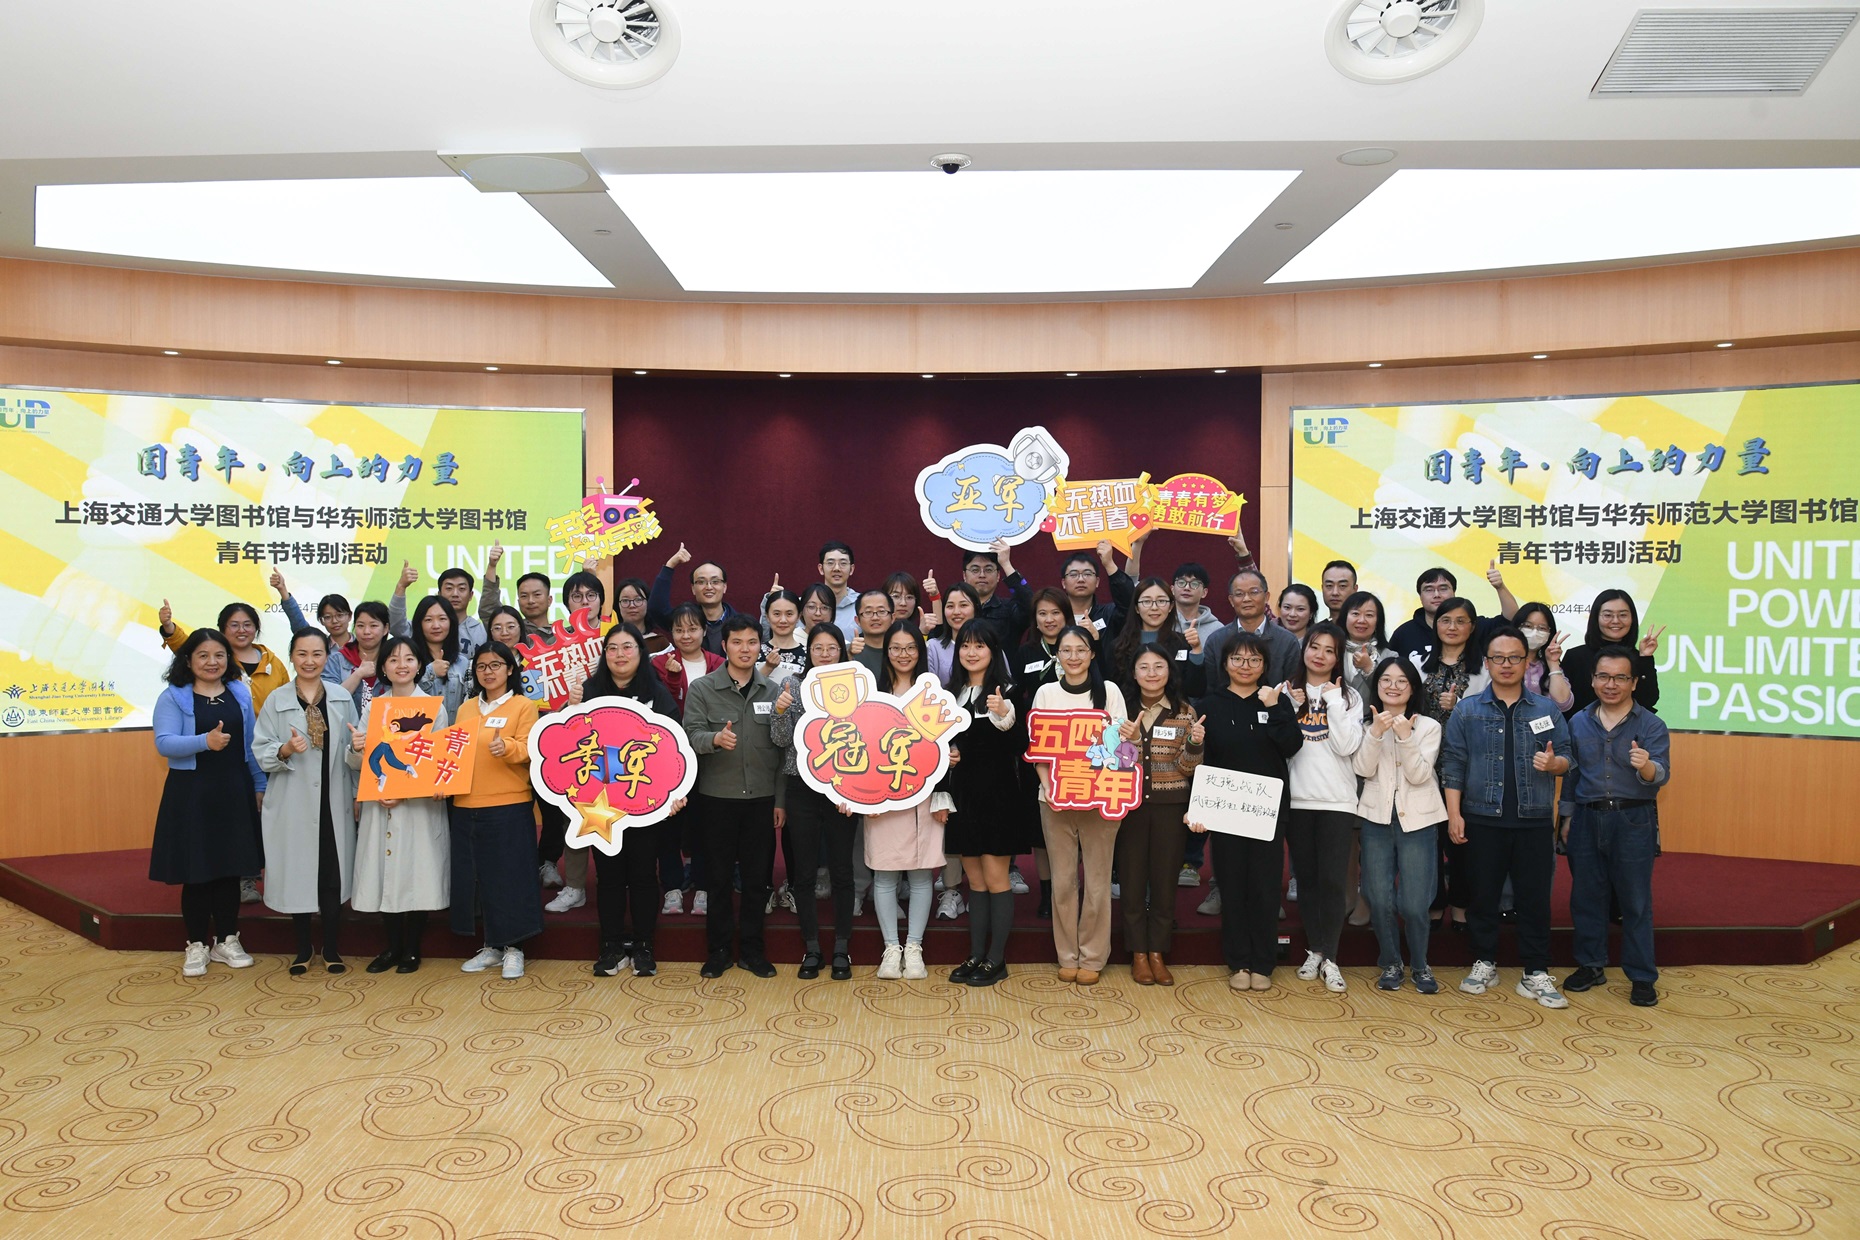 上海交通大学图书馆、华东师范大学图书馆联合举办青年节特别活动